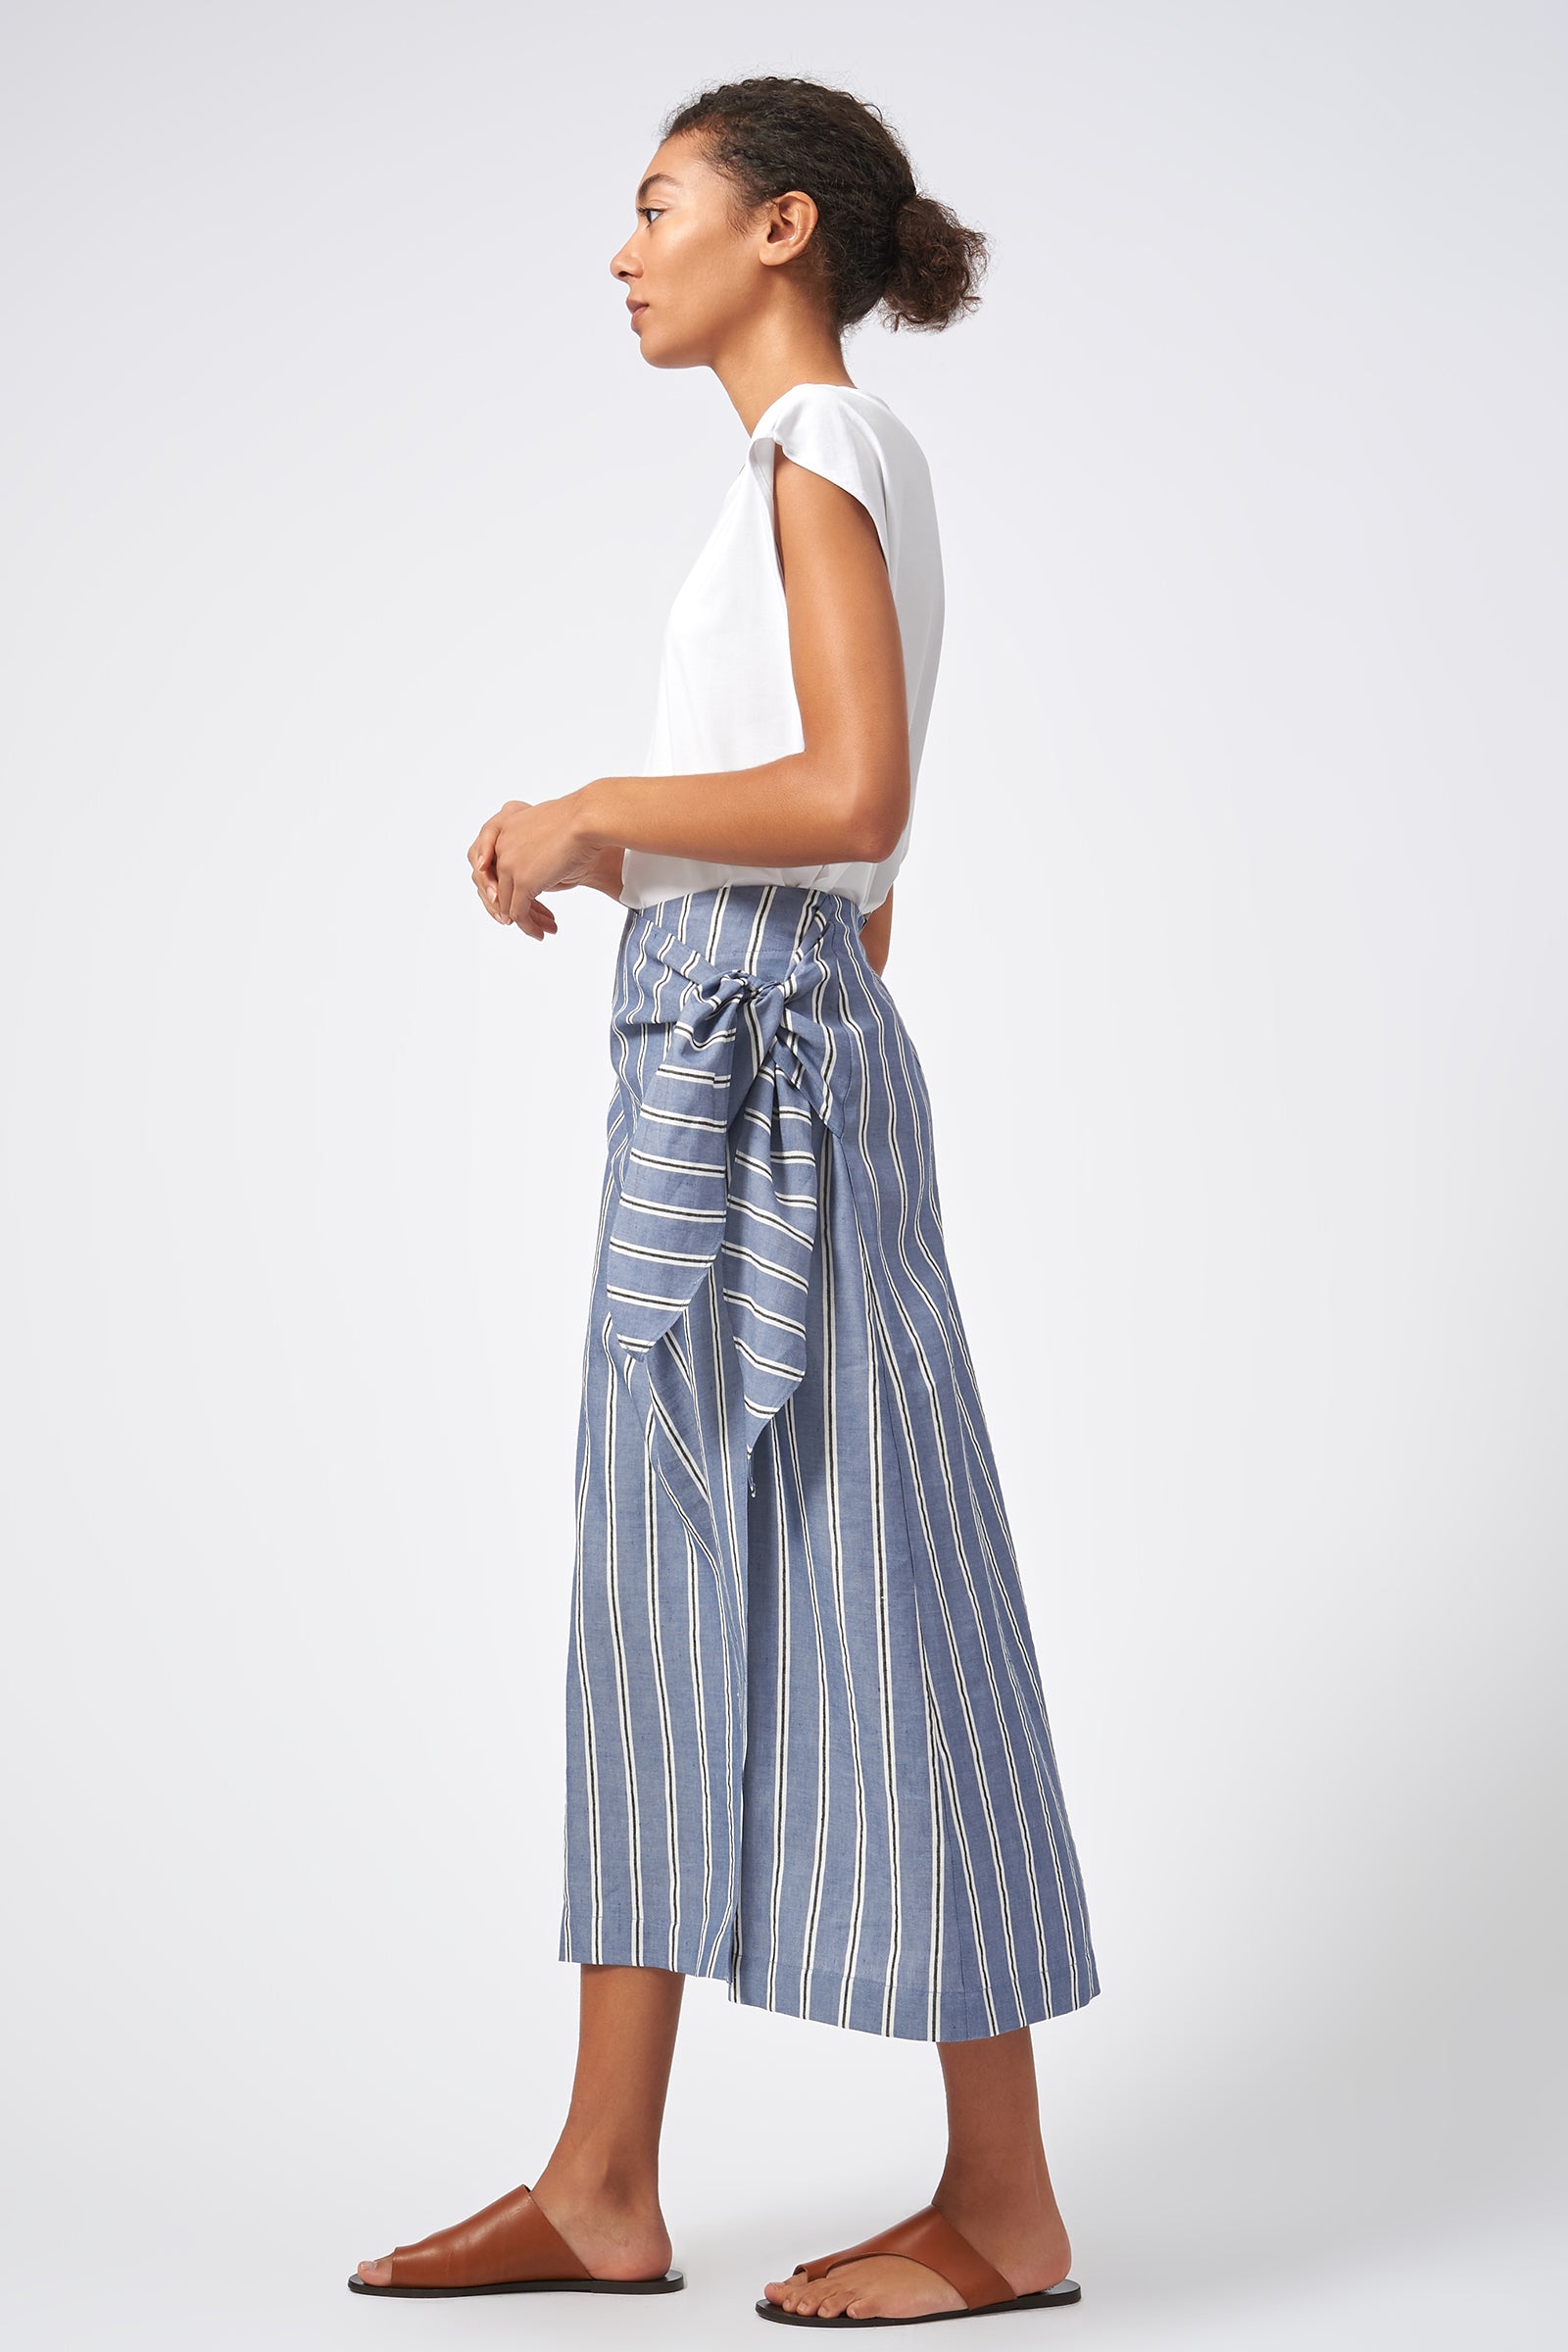 Kal Rieman Wrap Skirt Italian Stripe Blue On Model Side Full